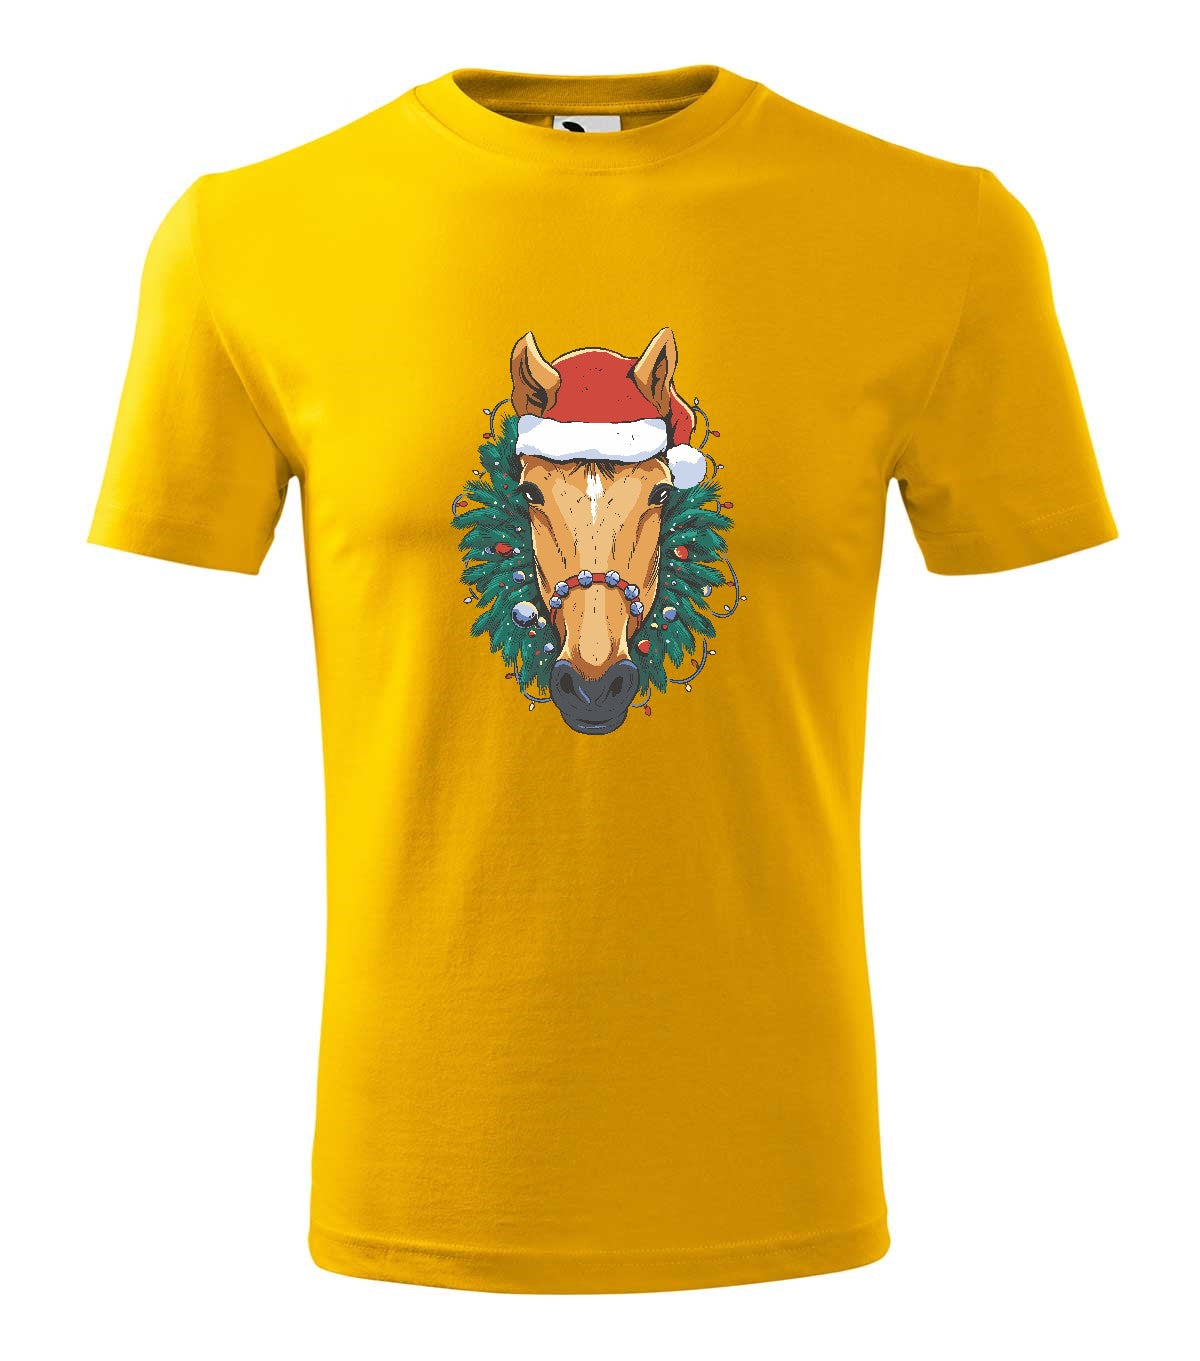 Christmas Horse férfi póló